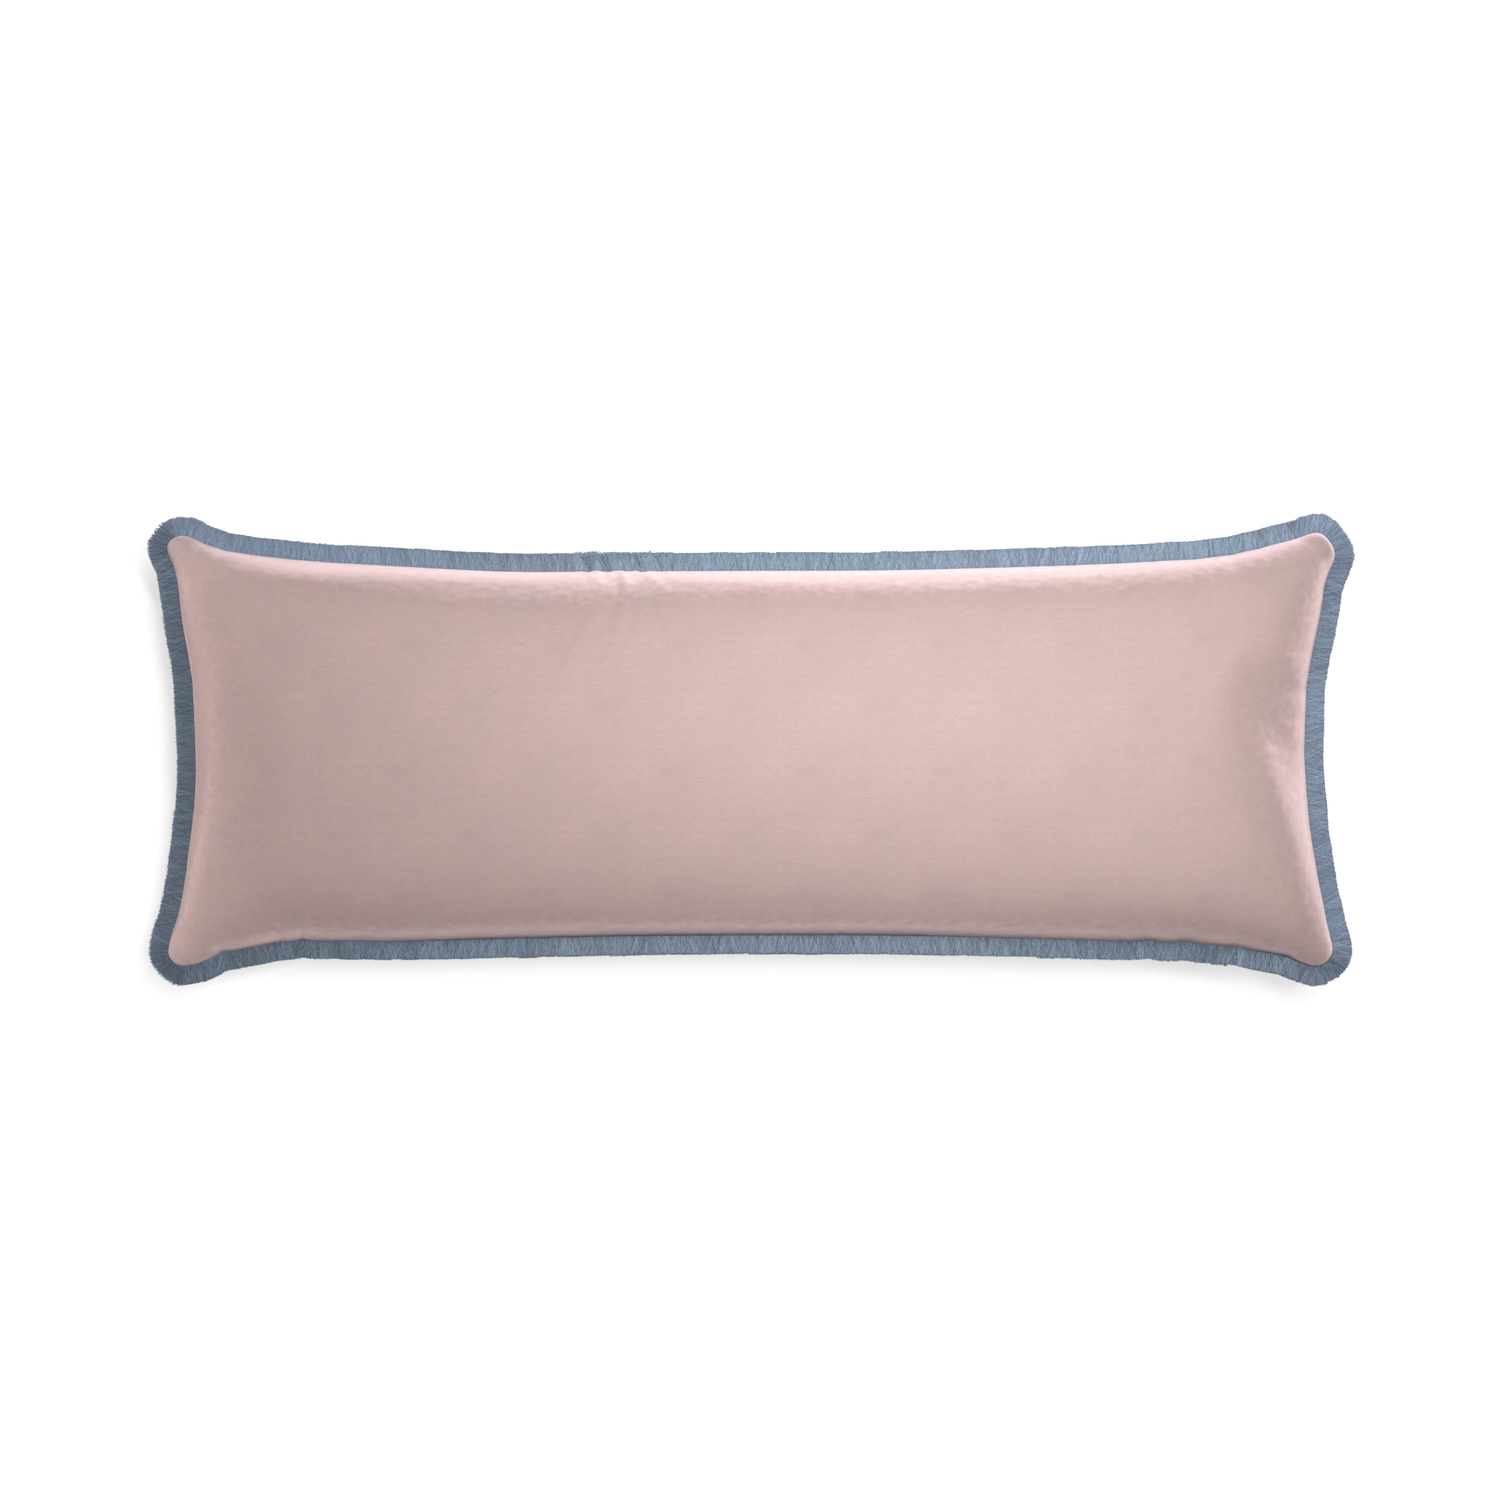 rectangle light pink velvet pillow with sky blue fringe 